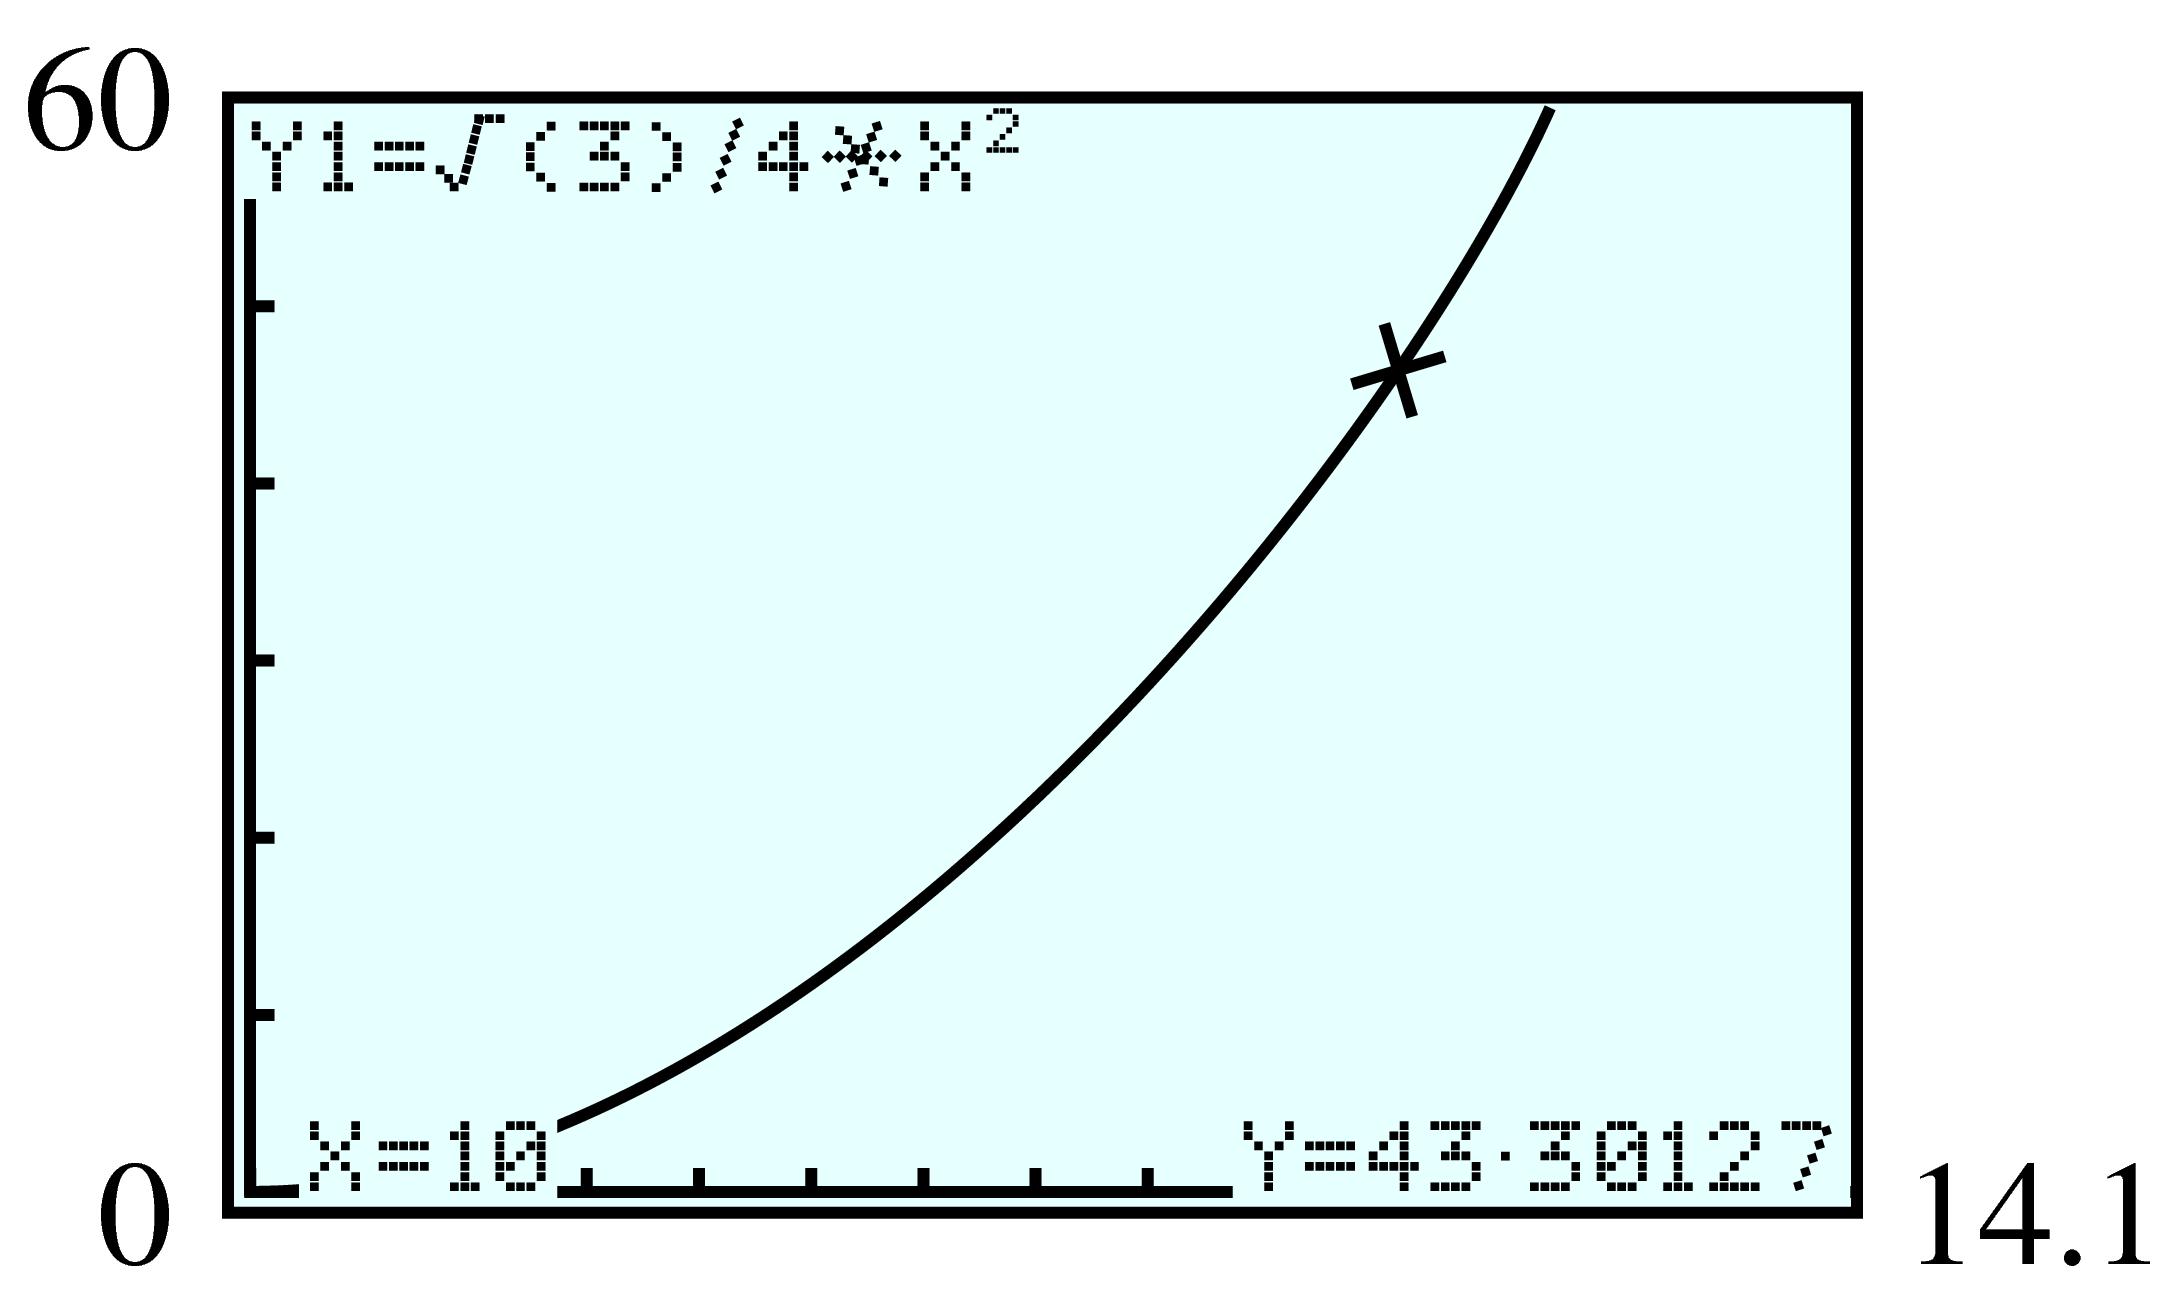 GC graph